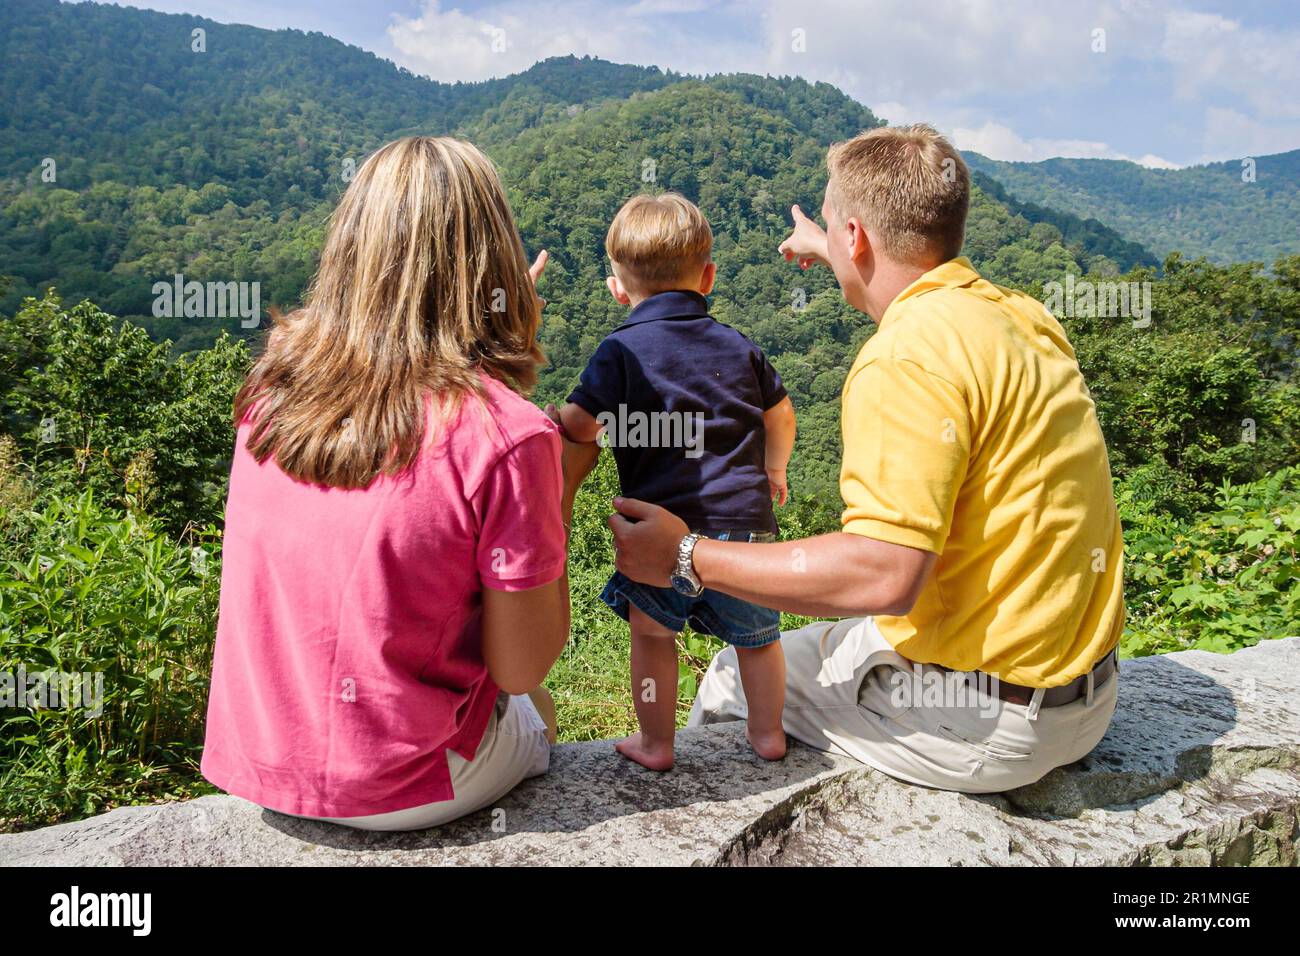 Tennessee Great Smoky Mountains National Park, naturaleza paisaje natural montaña cresta, familia familias madre padre niño niño niño niño observación de senderismo Foto de stock